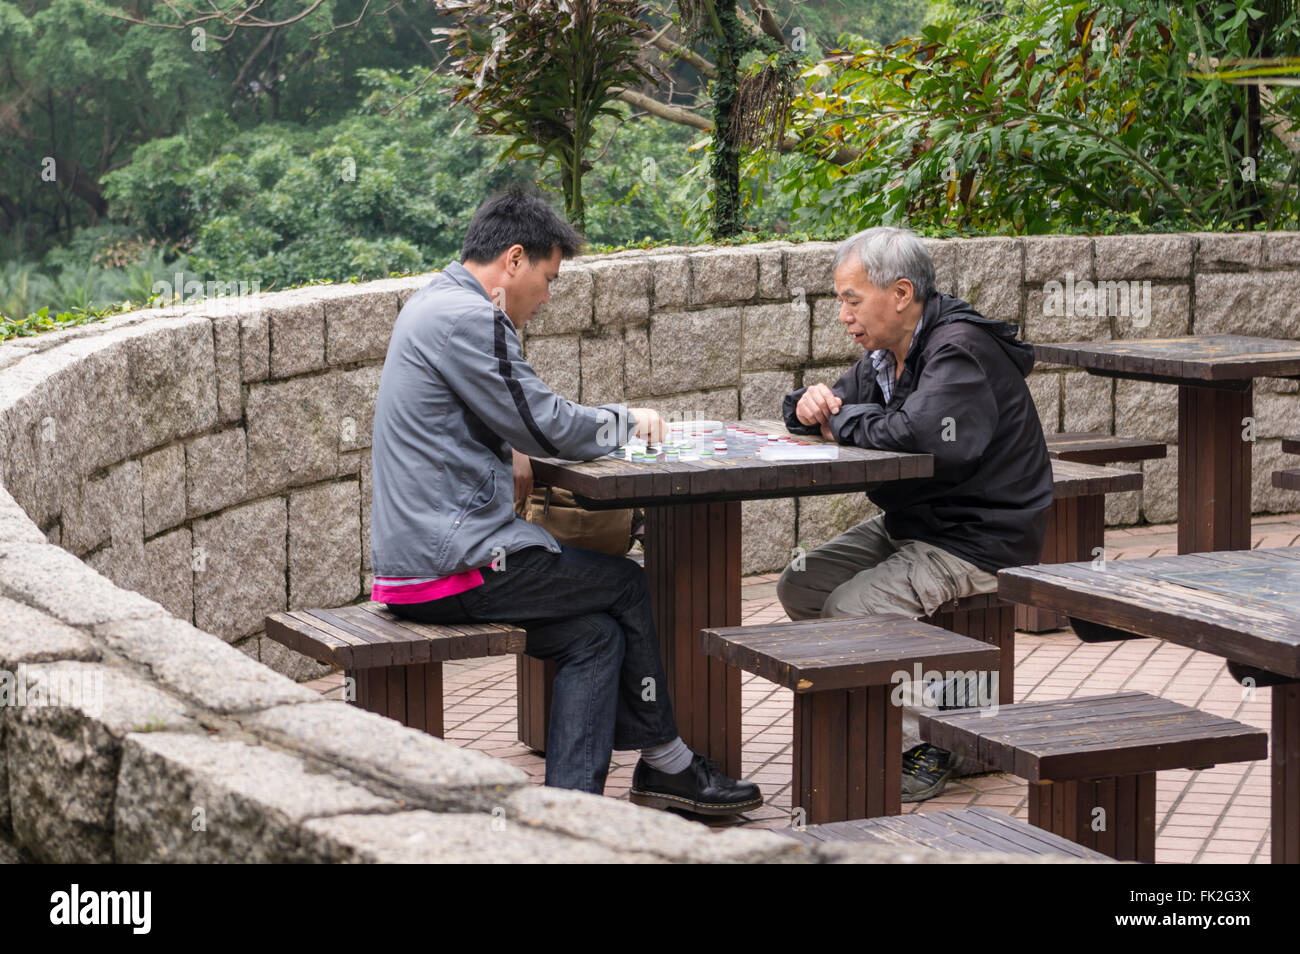 Two chinese men playing a board game in Kowloon Park, Tsim Sha Tsui, Kowloon, Hong Kong, China. Stock Photo